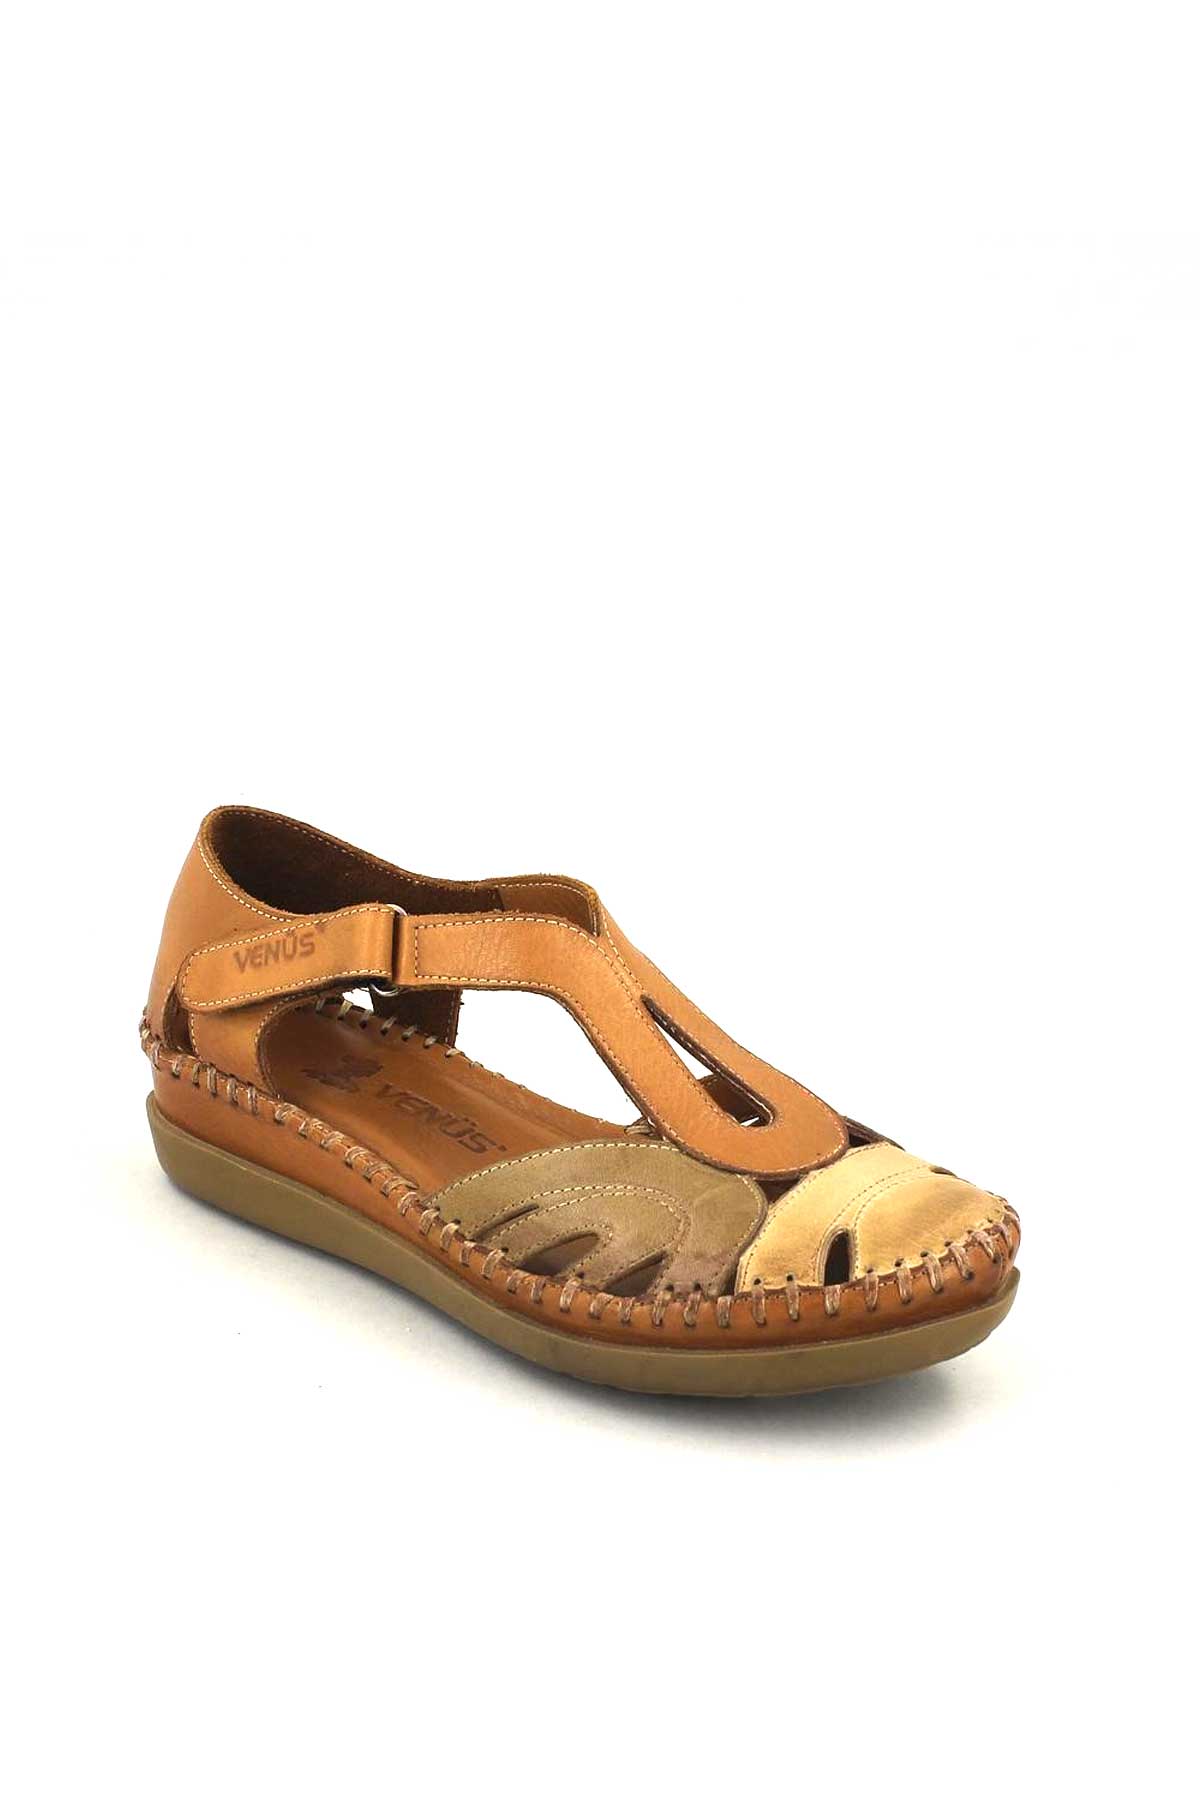 Kadın Comfort Sandalet Taba Bej 18793502